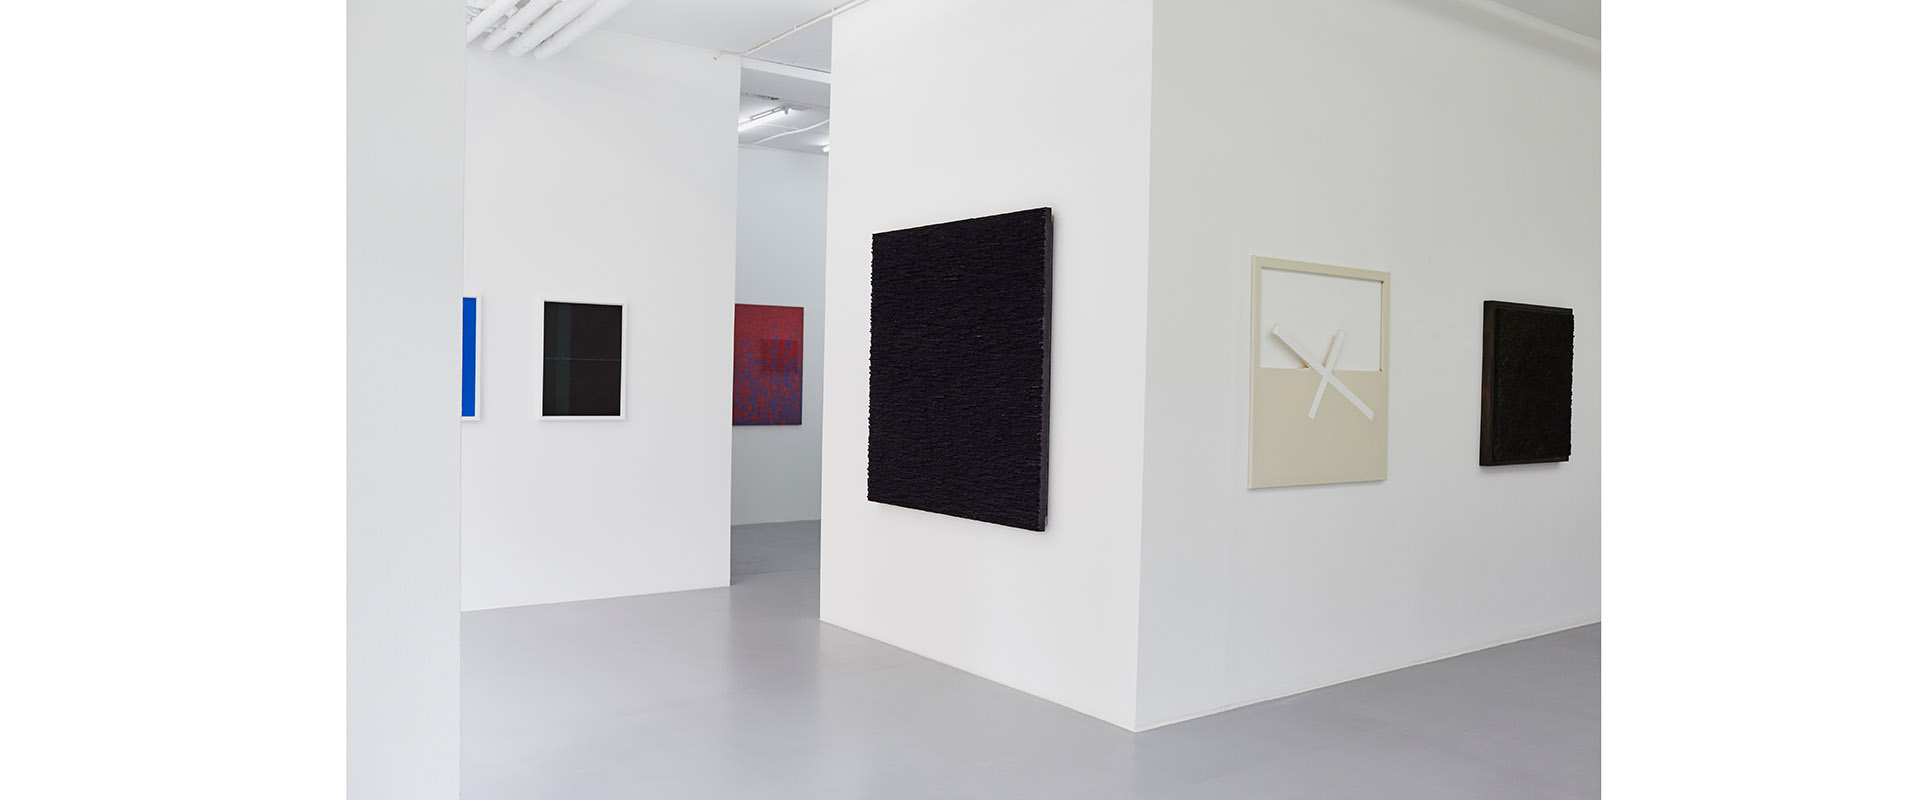 Ausstellungsansicht "Bender Schwinn Projekt Drei", Galerie Renate Bender 2018. Foto: Kathrin Makowski